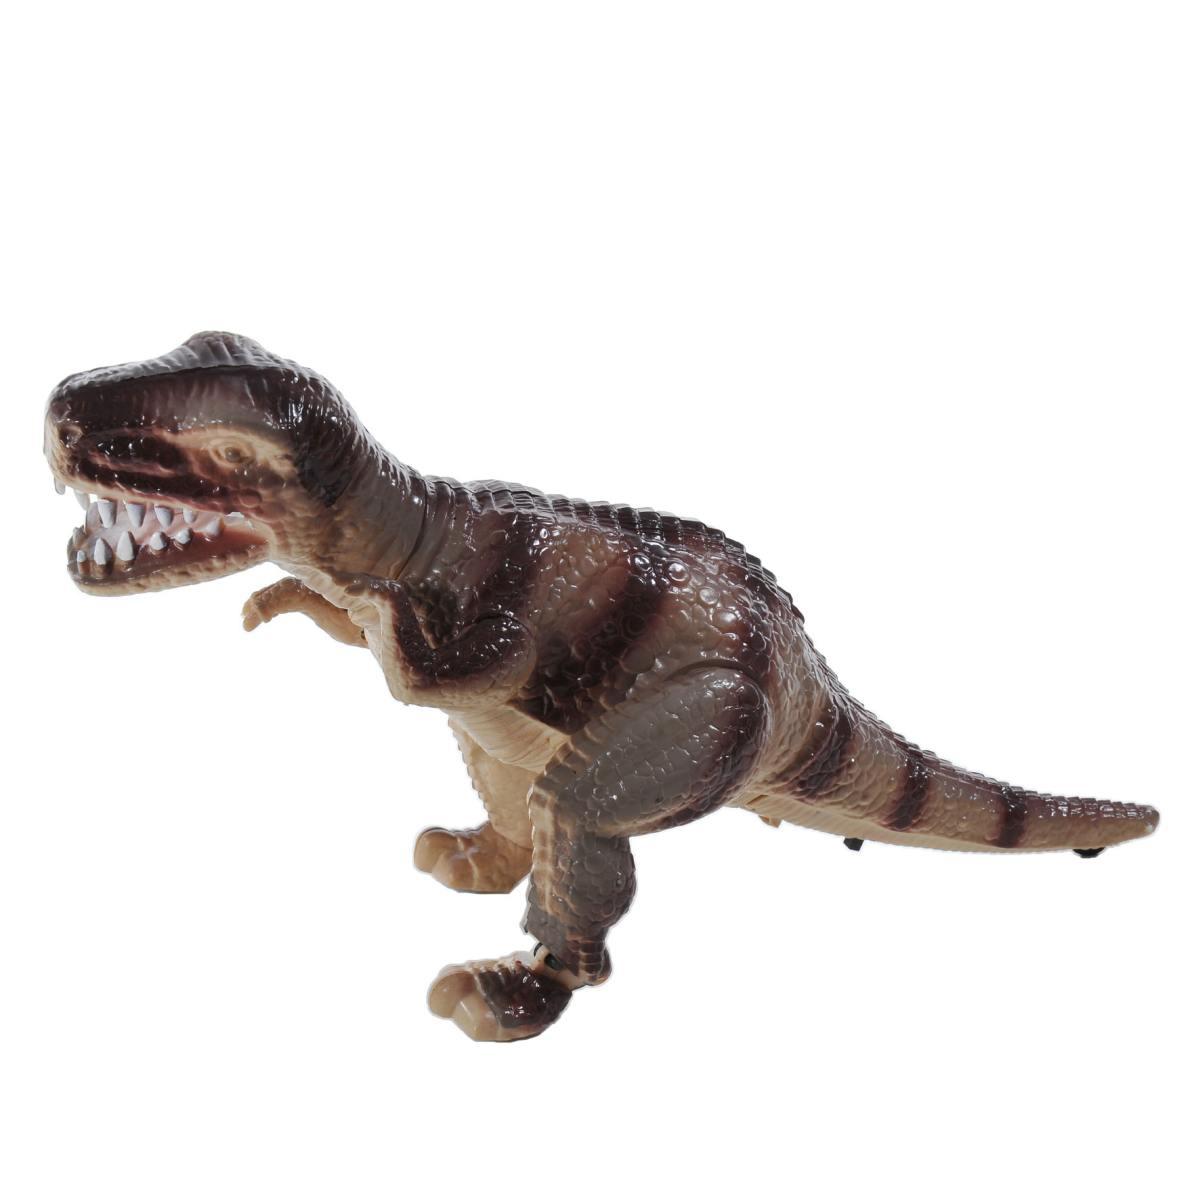 Dinosauro T-Rex cm.28 con Luci Suoni e Movimento